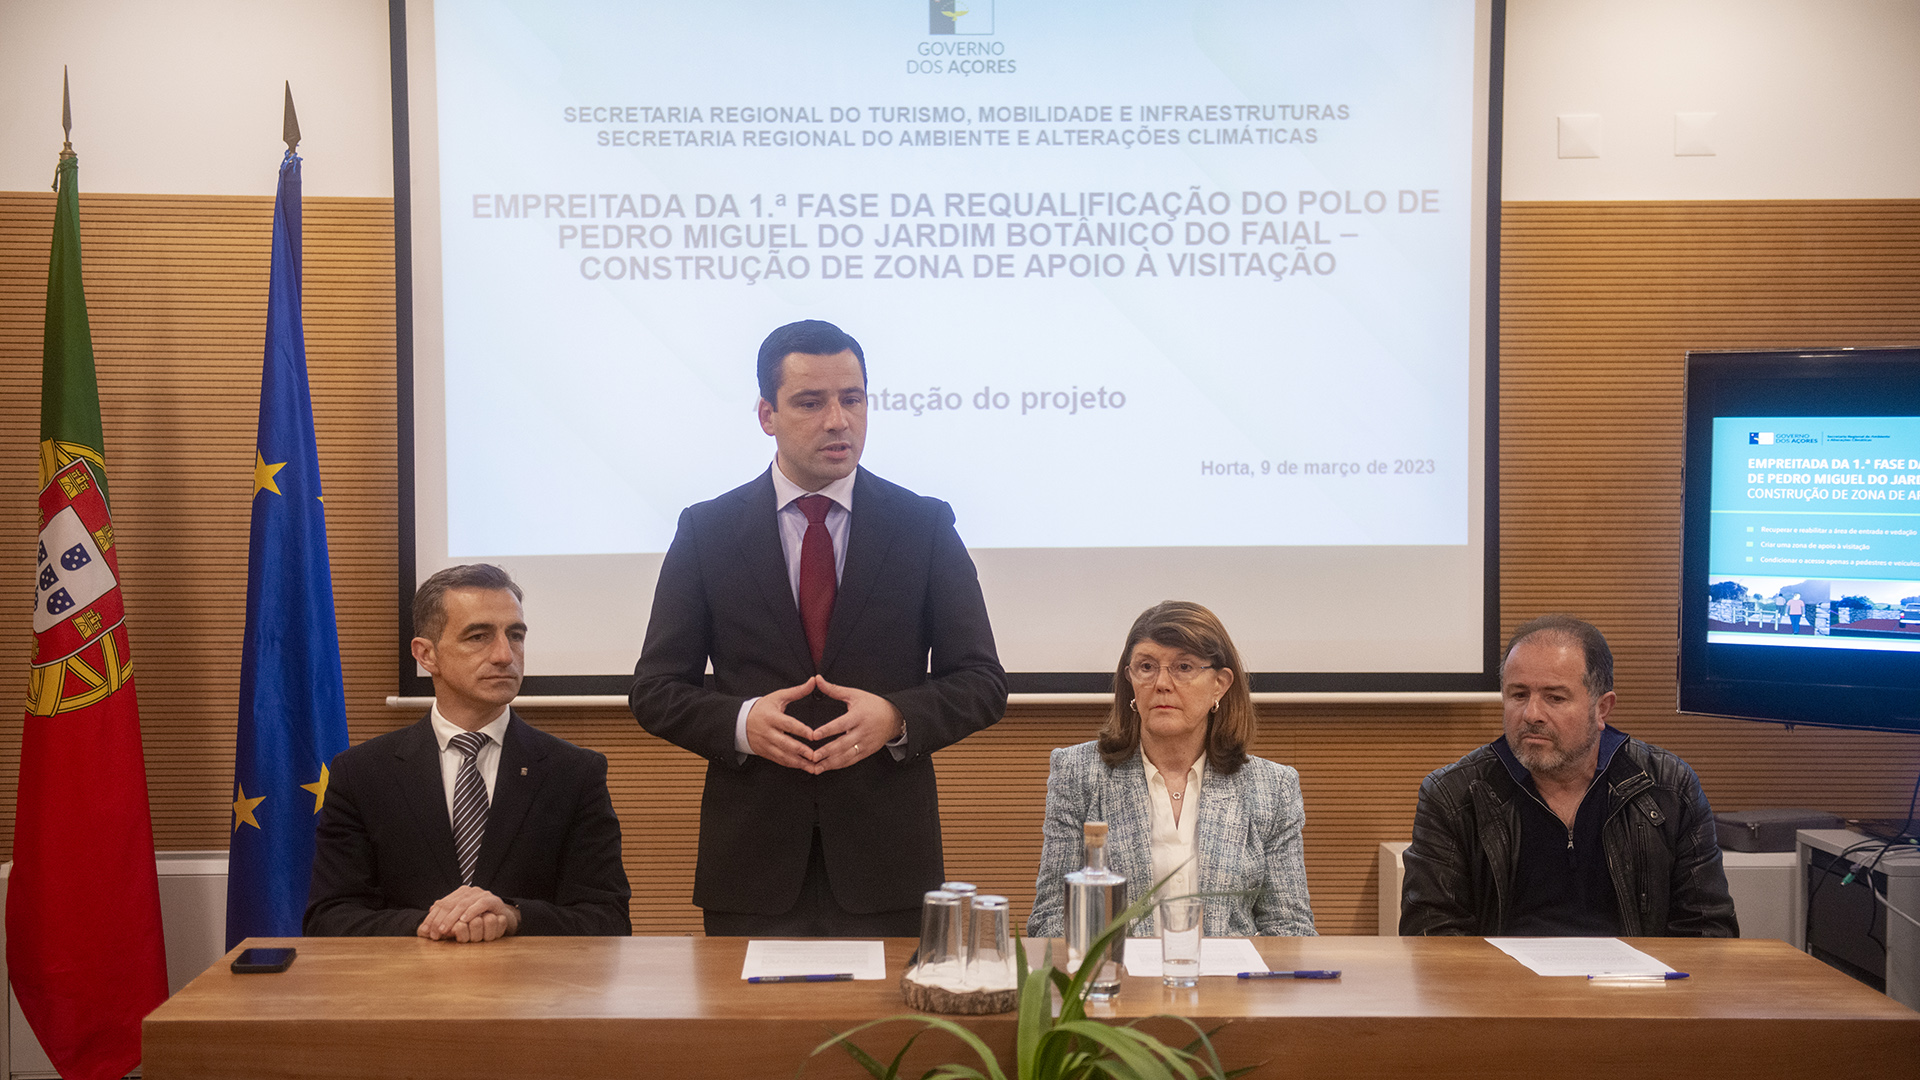 Assinatura do auto de consignação da empreitada da 1.ª fase da requalificação do Polo de Pedro Miguel do Jardim Botânico do Faial.